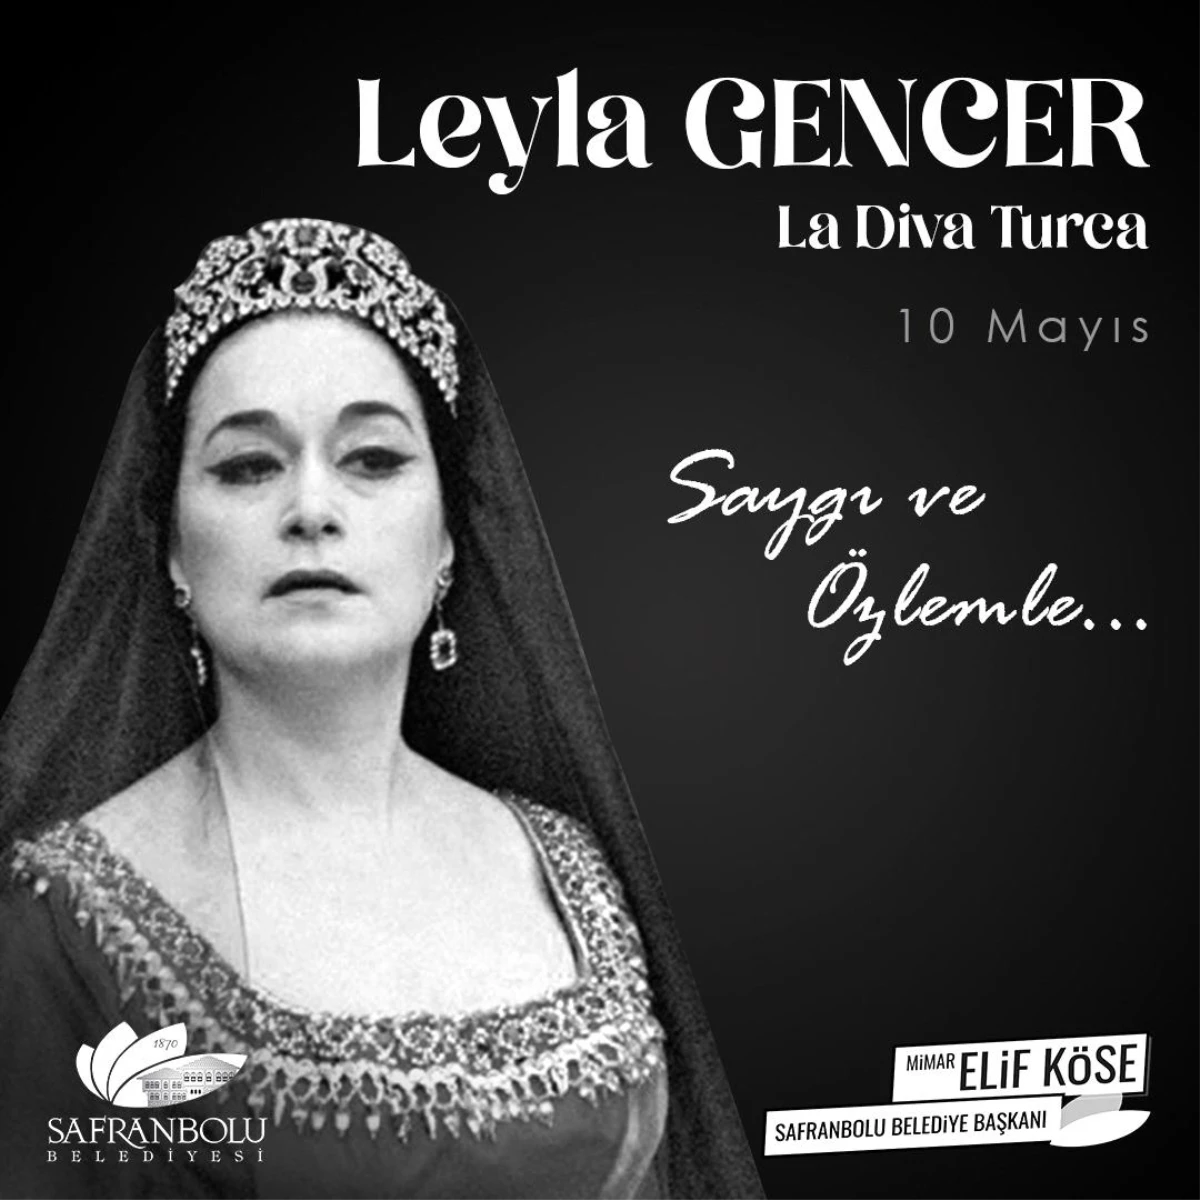 La Diva Turca Leyla Gencer ölümünün 15. yılında anılıyor